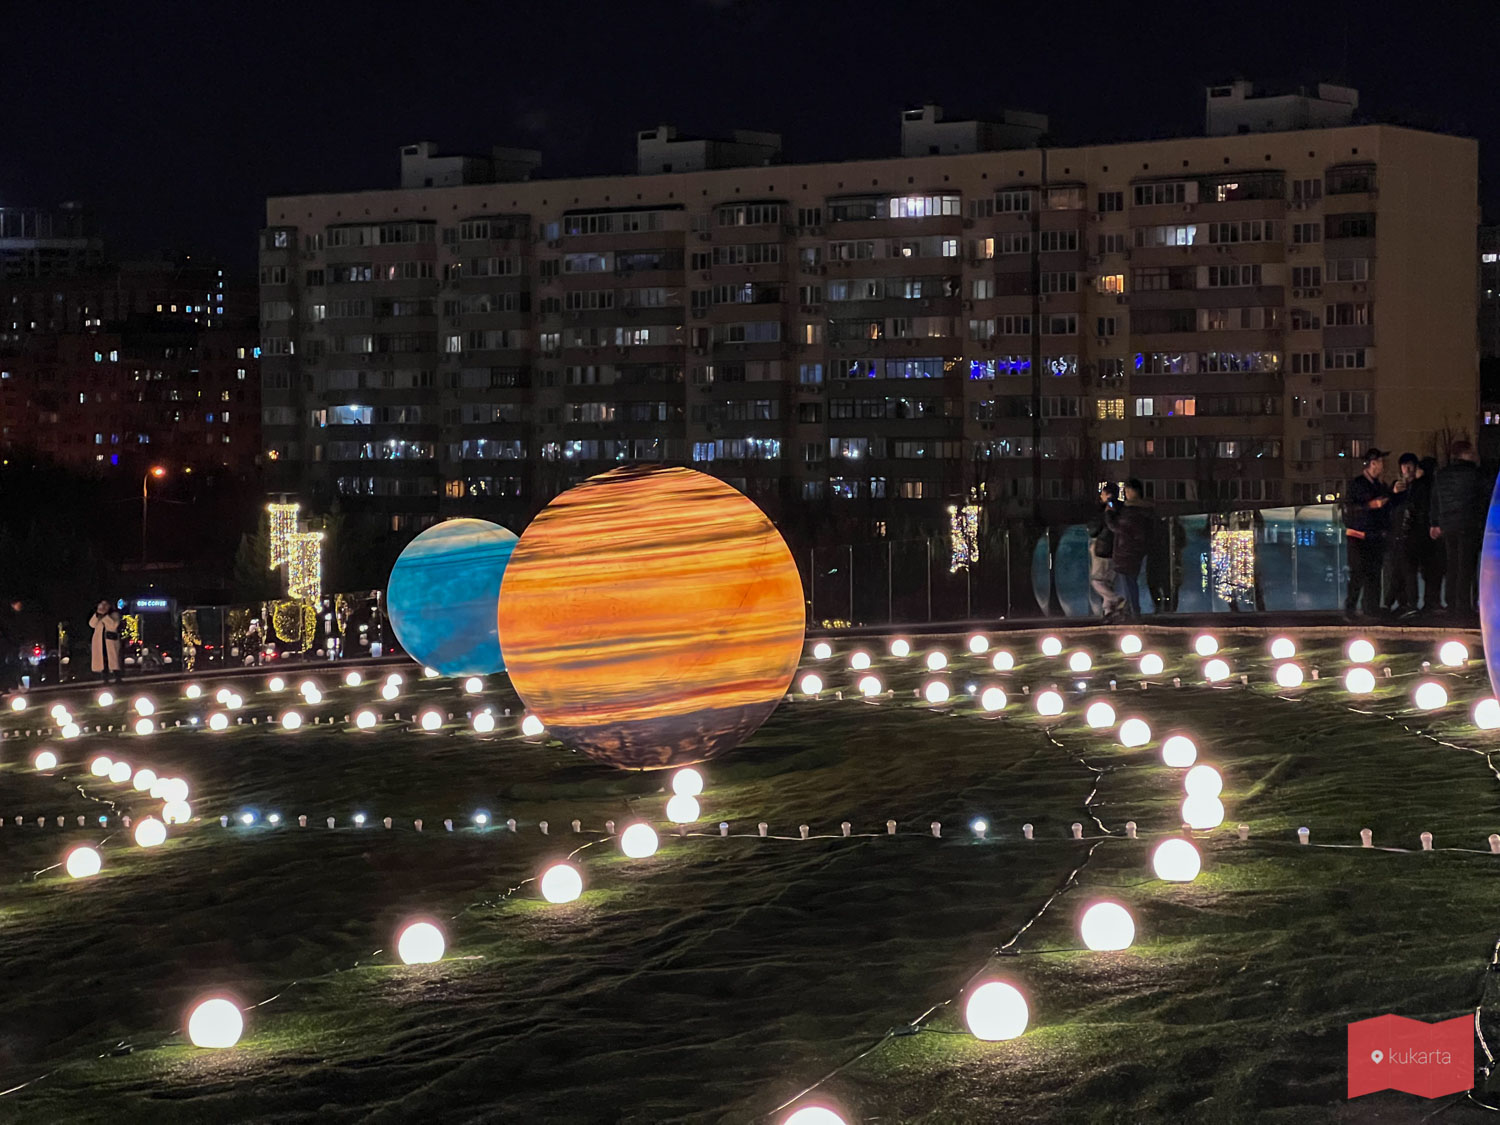 Копия Солнечной системы (Парад планет) в парке Галицкого, Краснодар